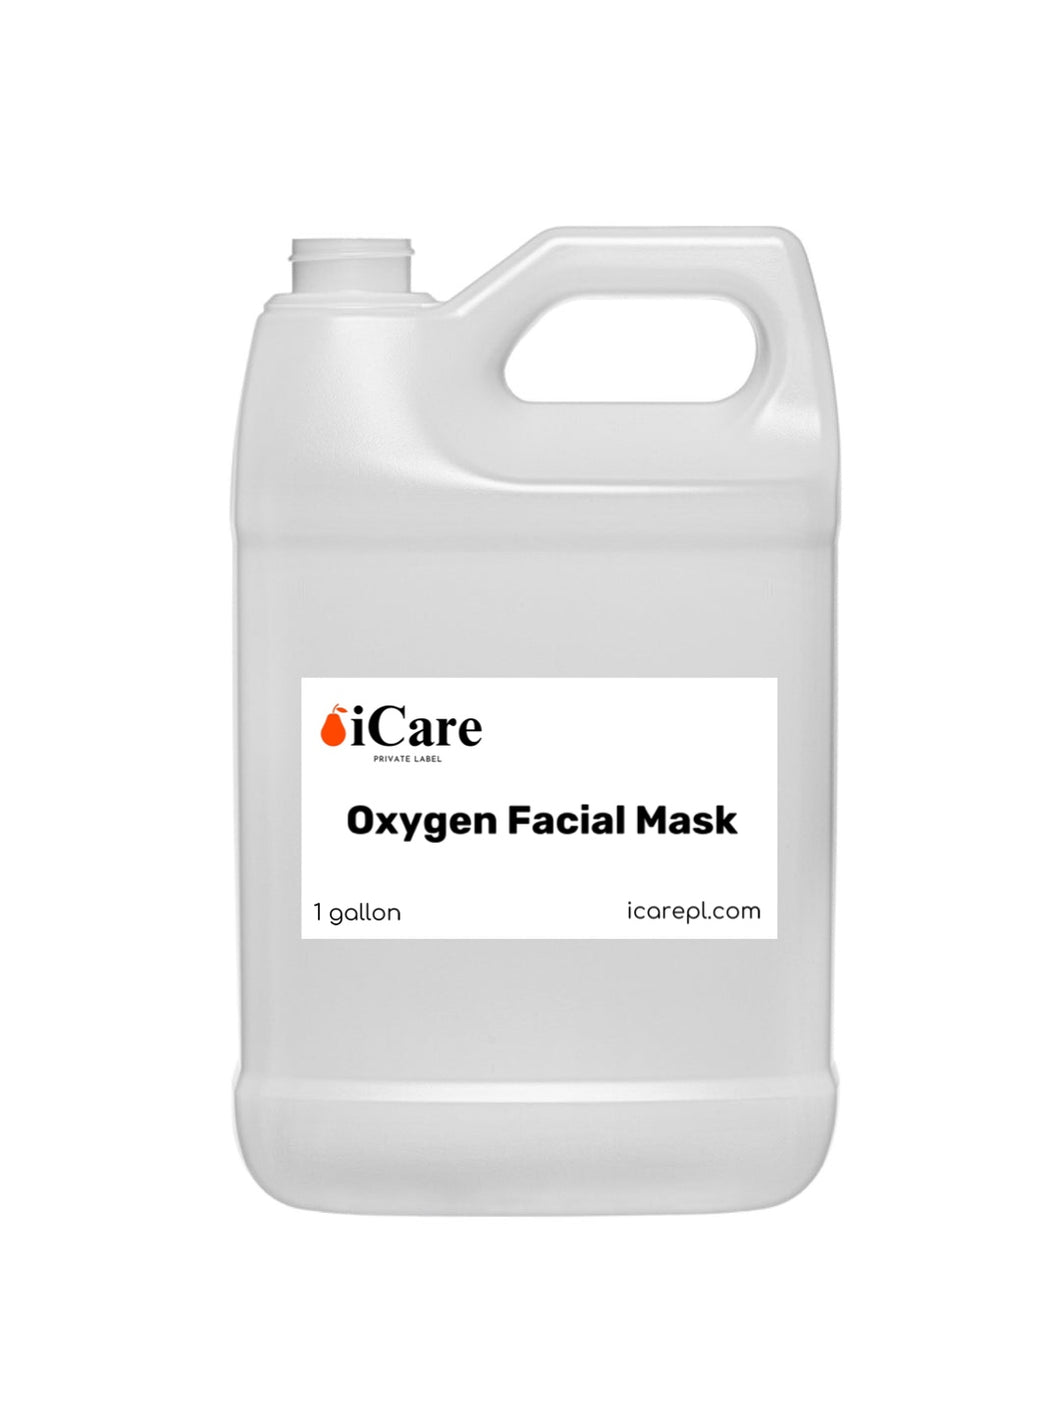 ZXY - Oxygen Facial Mask Gallon